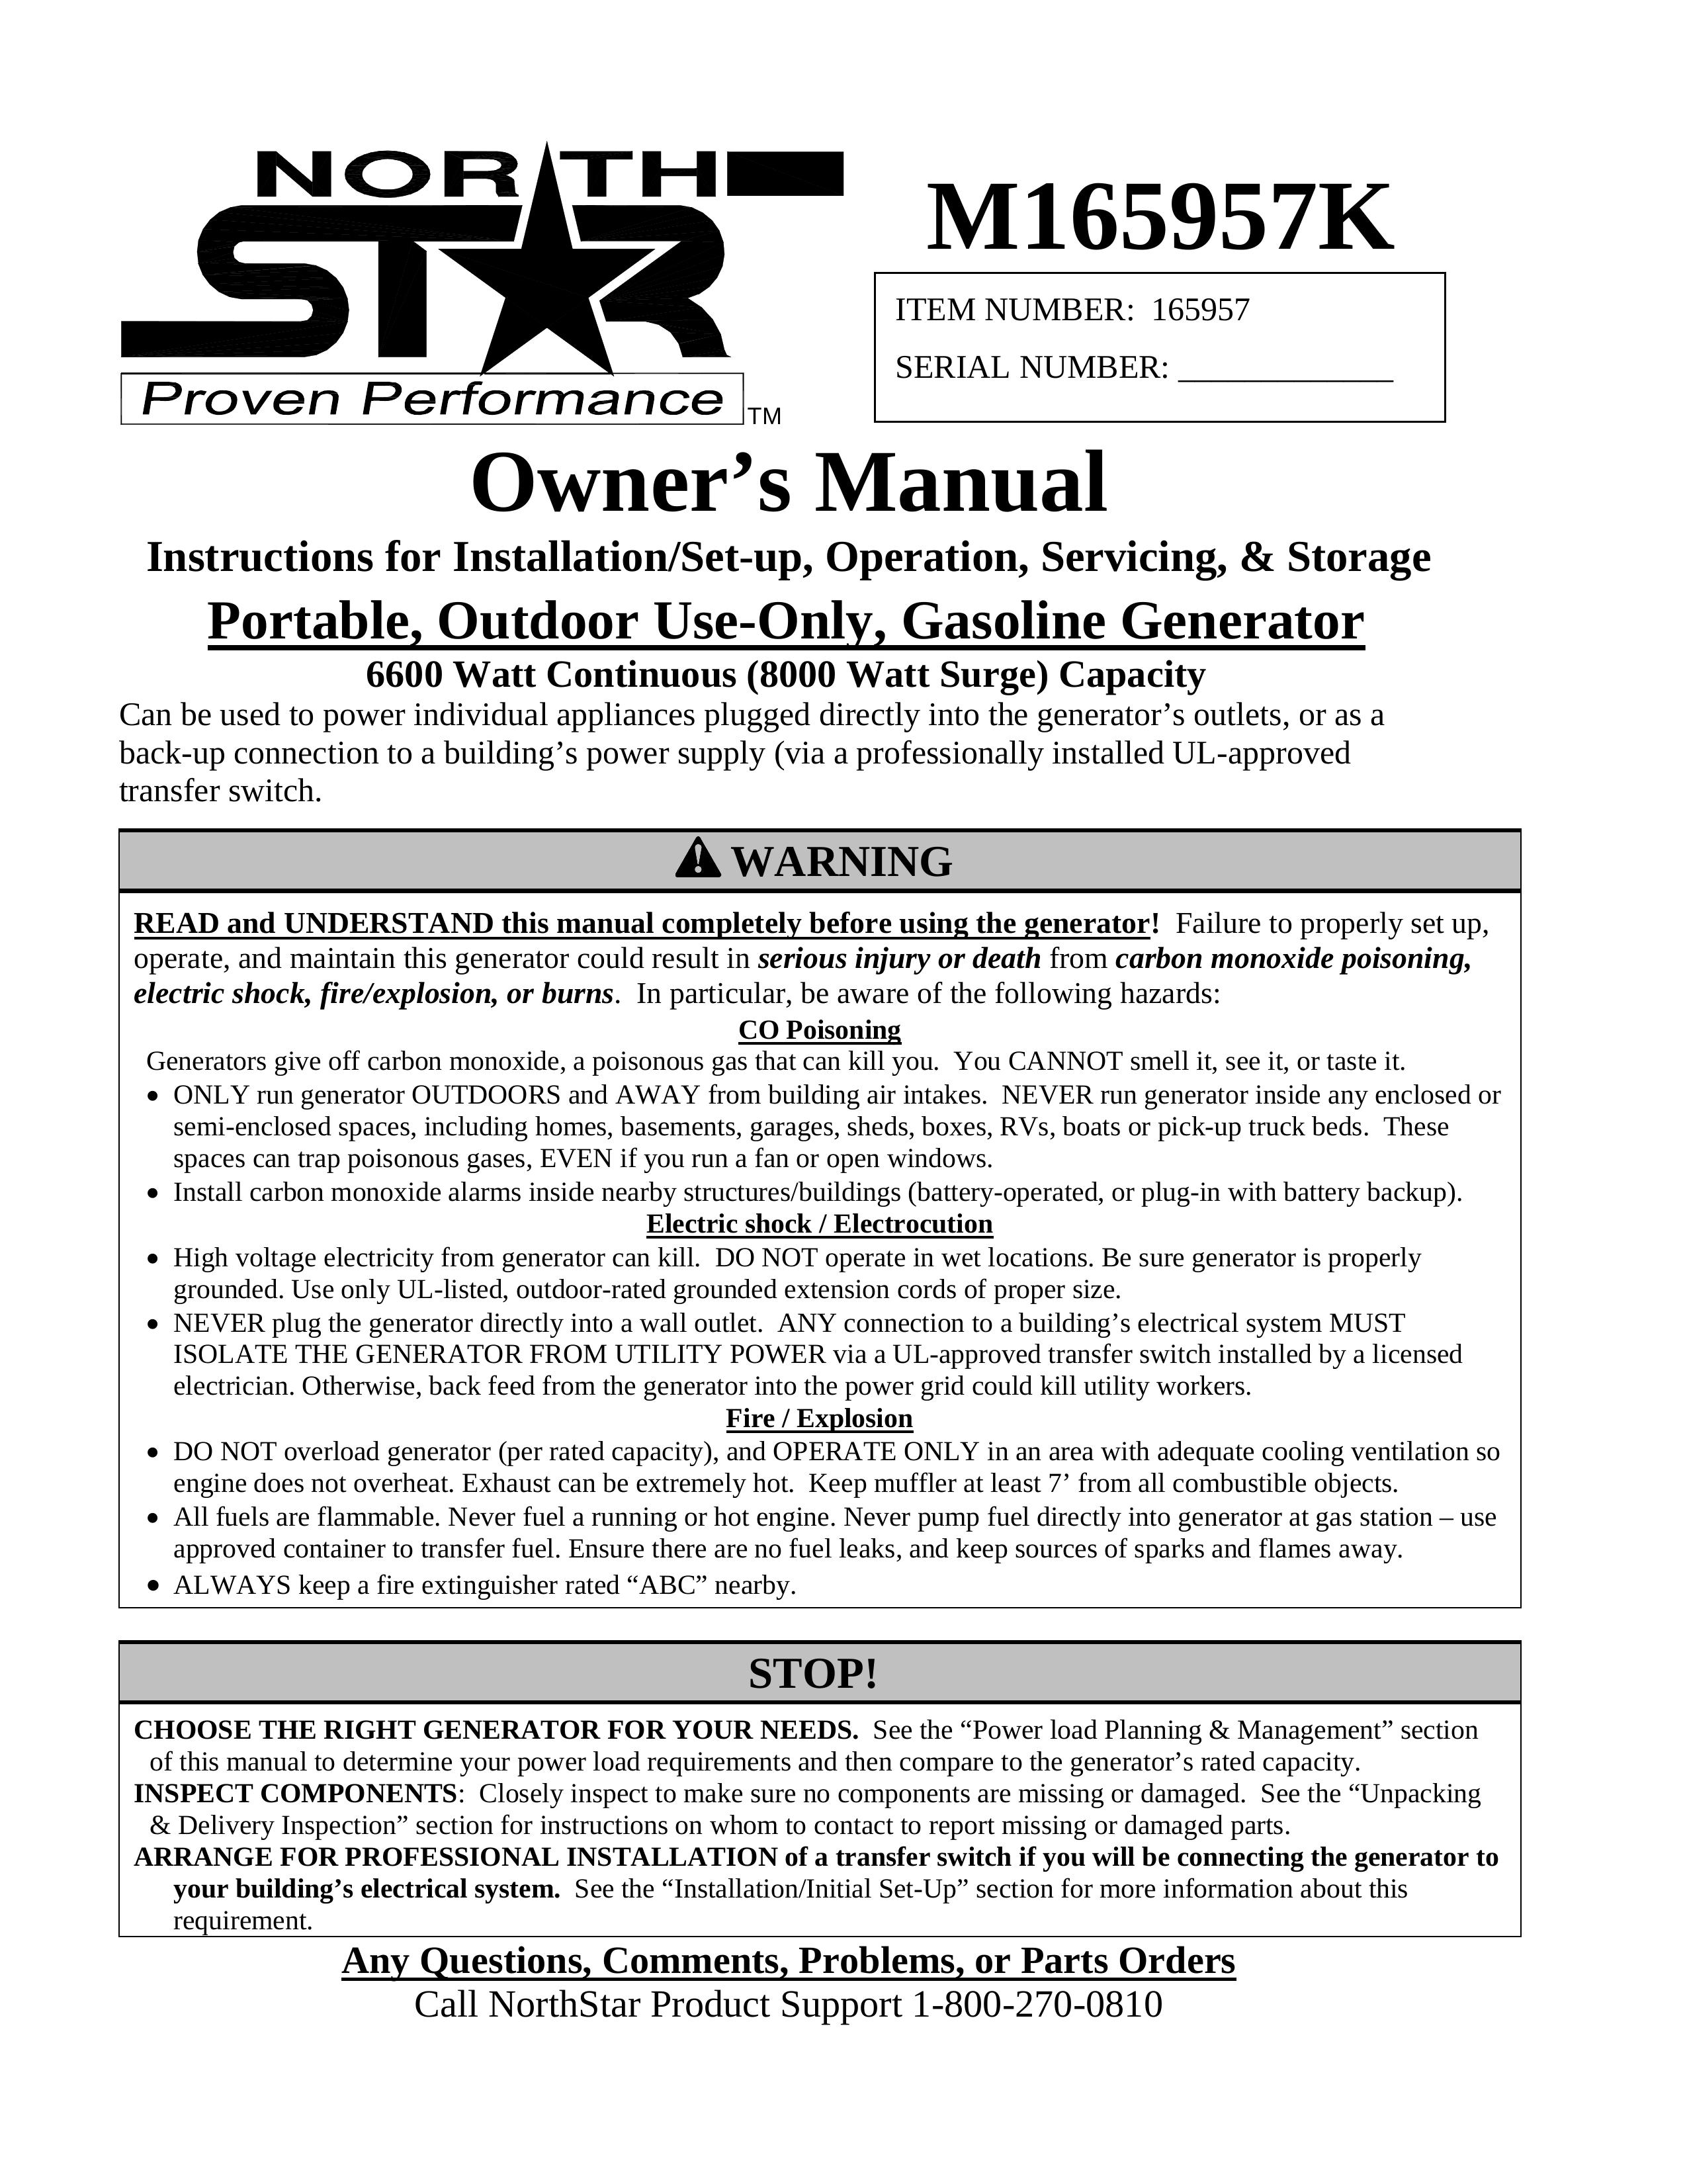 North Star M165957K Portable Generator User Manual